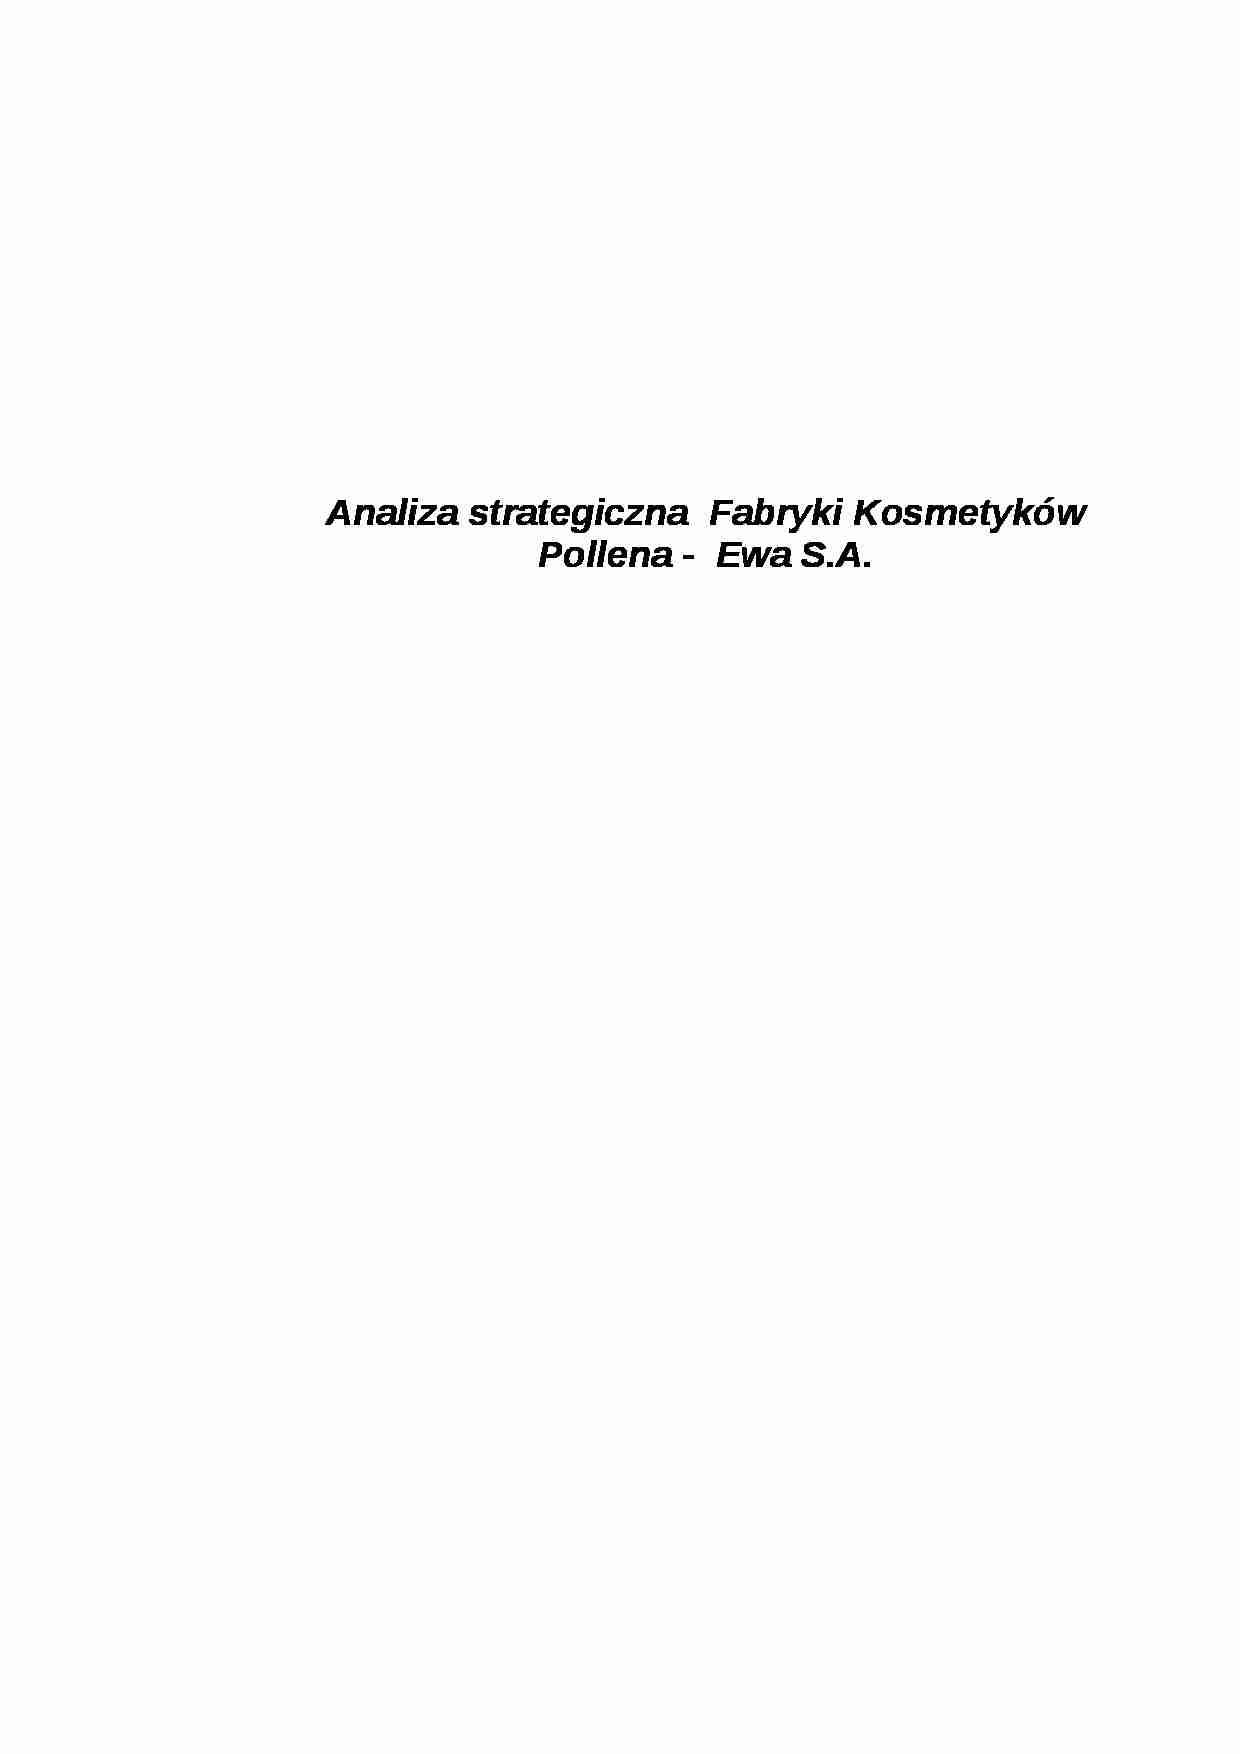 Analiza strategiczna Pollena - projekt - strona 1